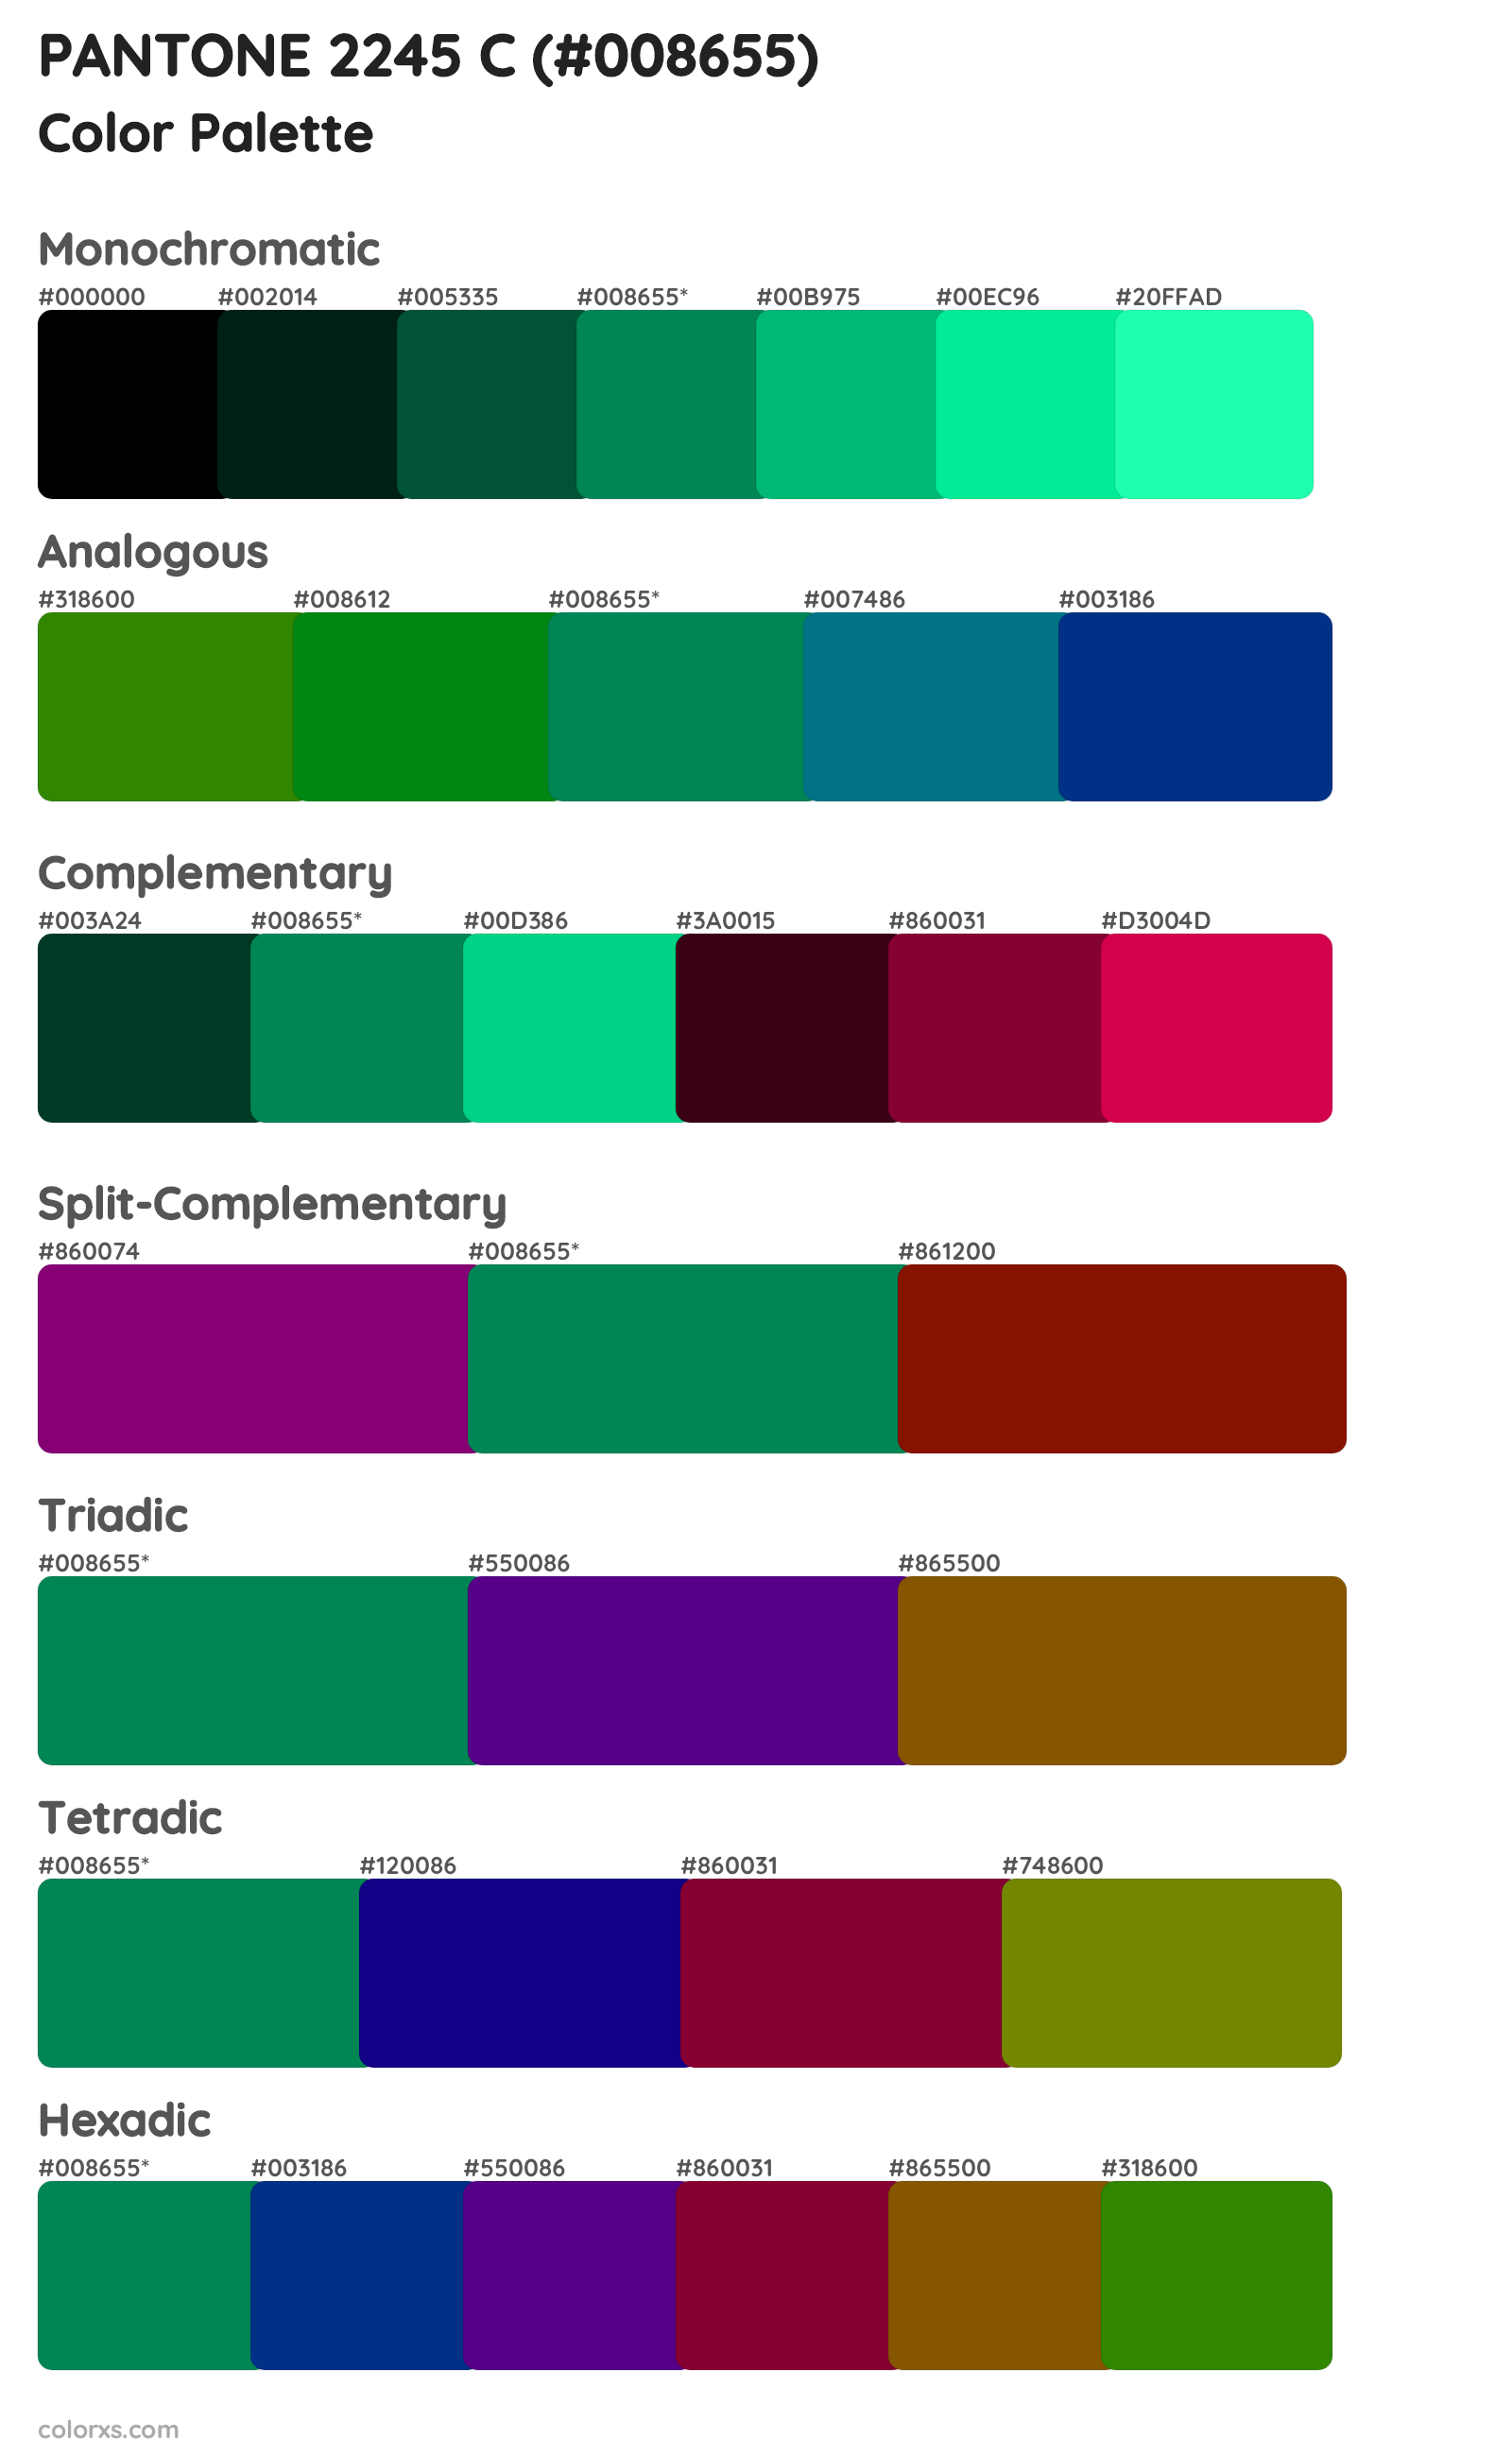 PANTONE 2245 C Color Scheme Palettes